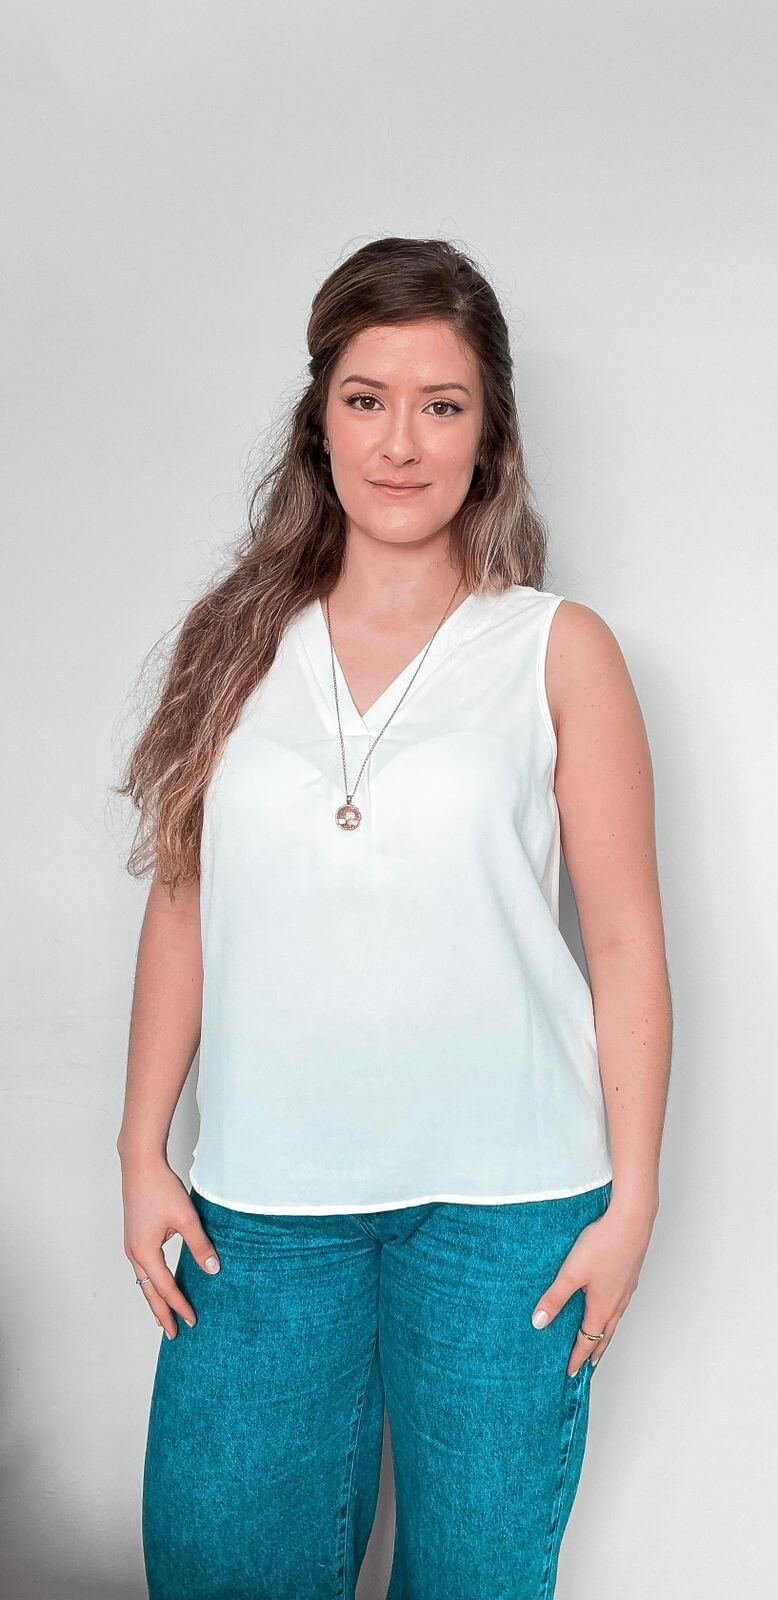 Karina Pankievicz, nutricionista em Curitiba, em pé, usando uma blusa branca sem mangas, um colar dourado e calça jeans, ela tem uma expressão serena e está olhando diretamente para a câmera. O fundo é neutro e simples, colocando o foco inteiramente nela.